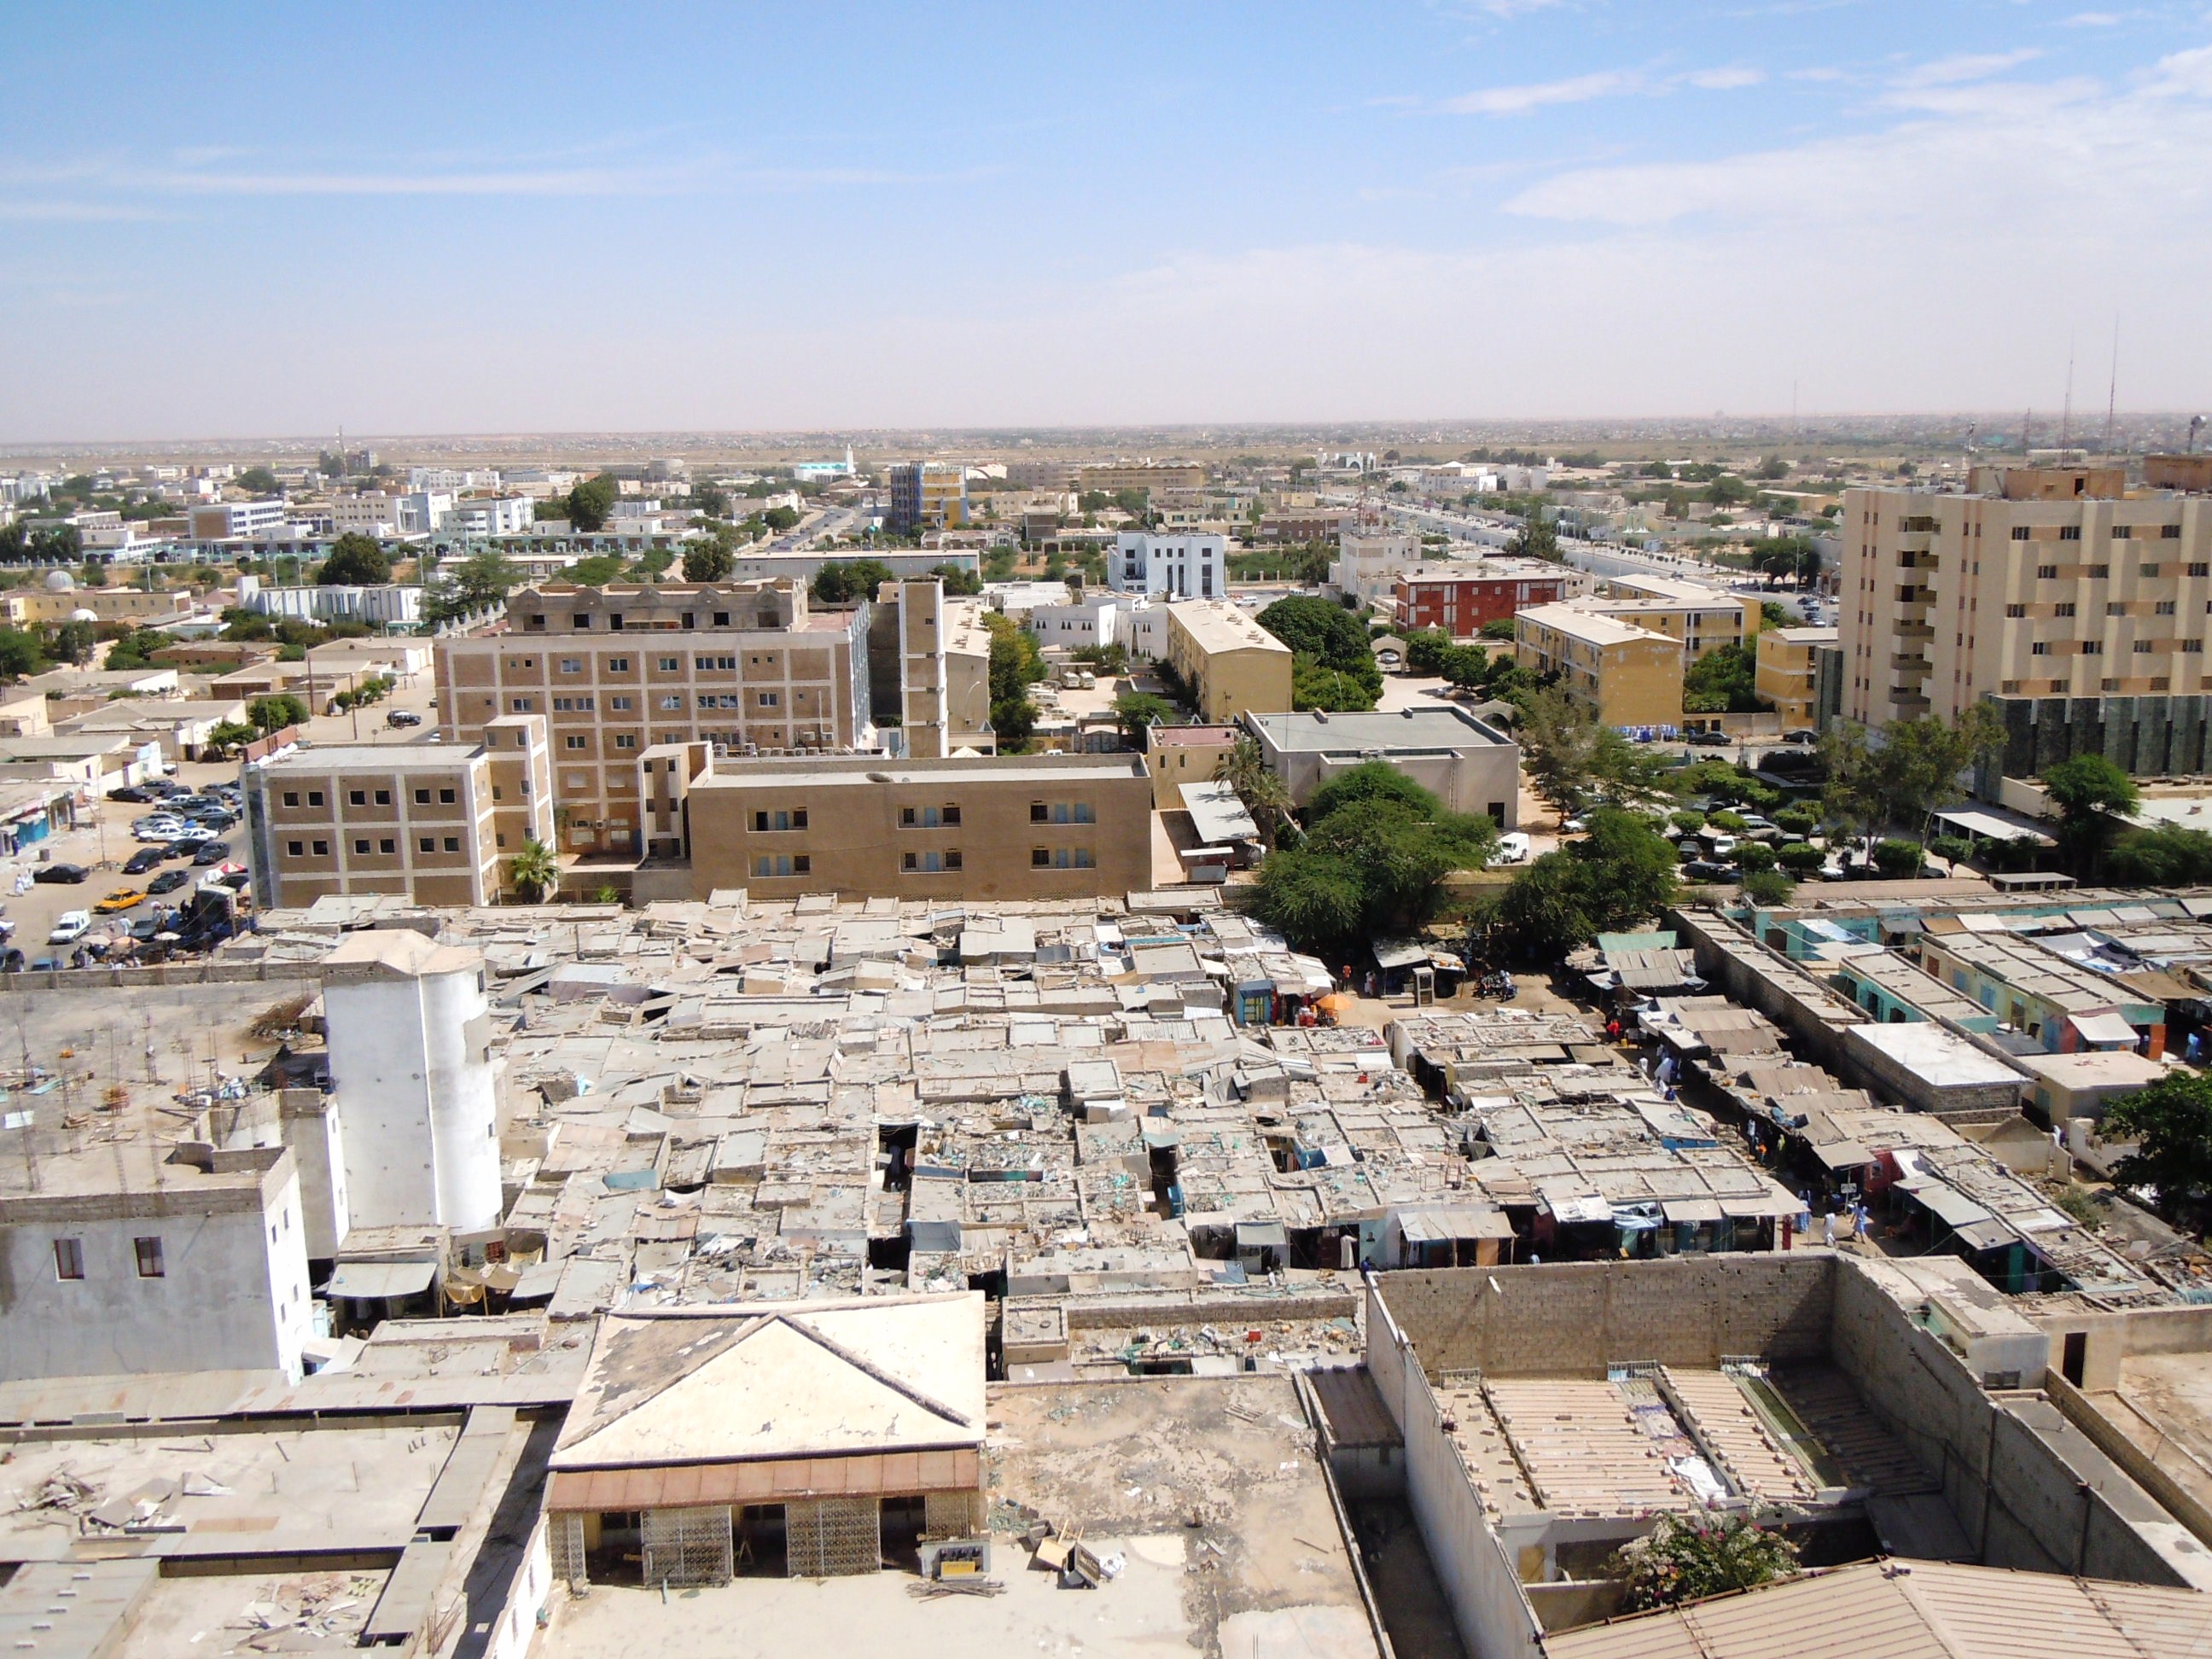 Découverte macabre dans une voiture à Nouakchott : un jeune homme retrouvé mort avec des traces de coups